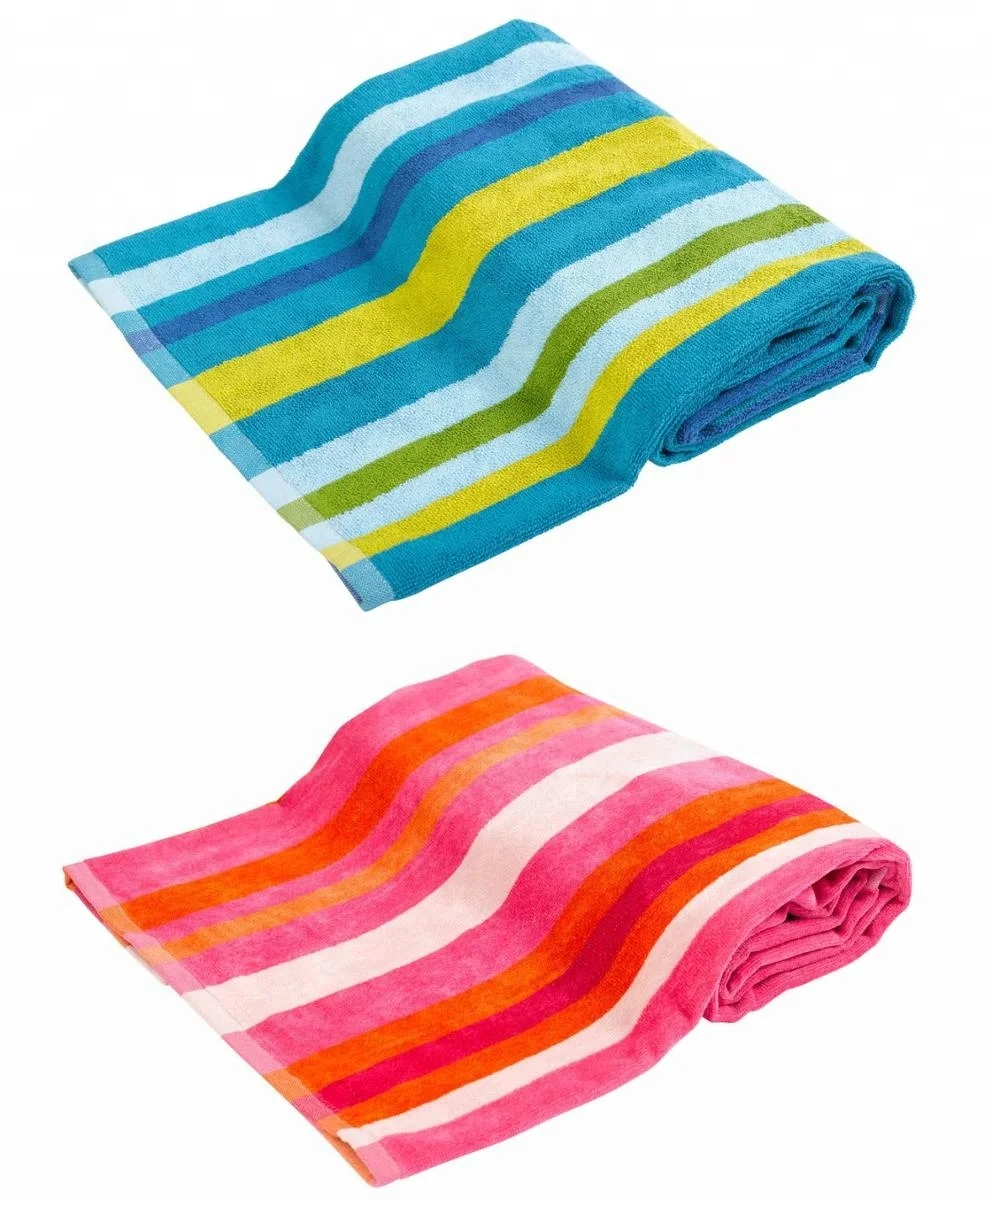 velour bath towels